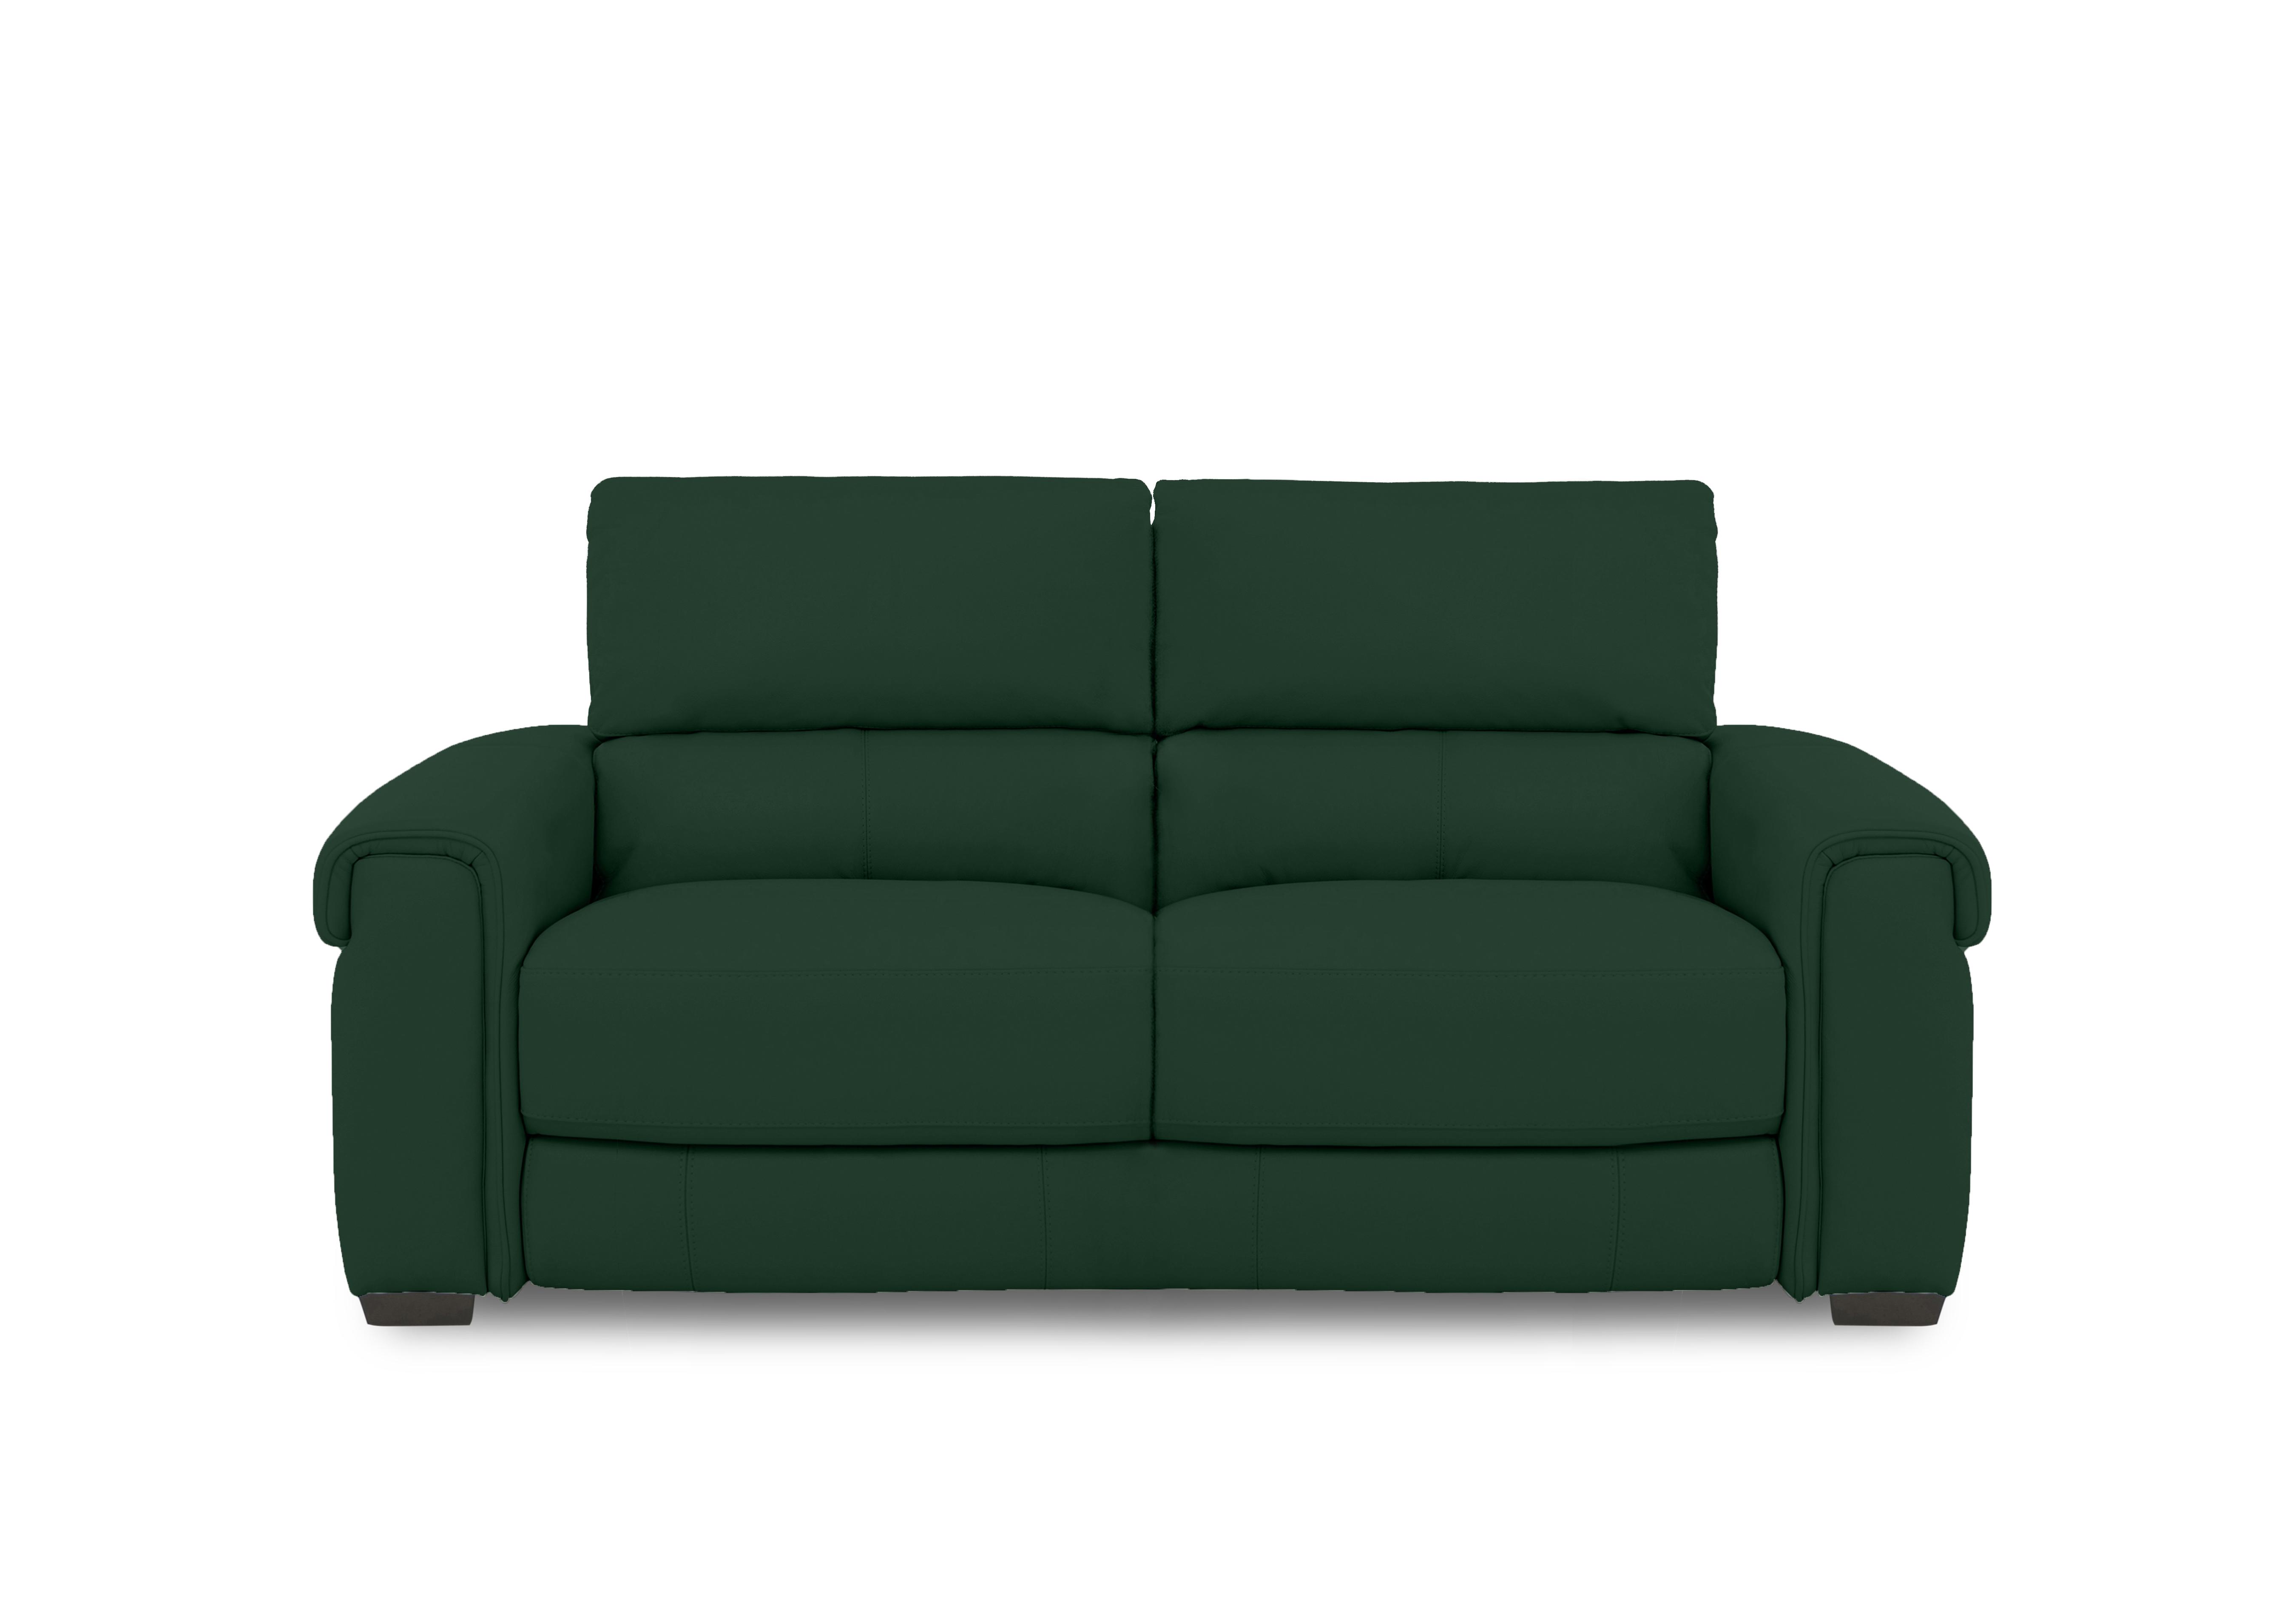 Nixon Fabric 3 Seater Sofa in Fab-Meg-R37 Emerald Green on Furniture Village